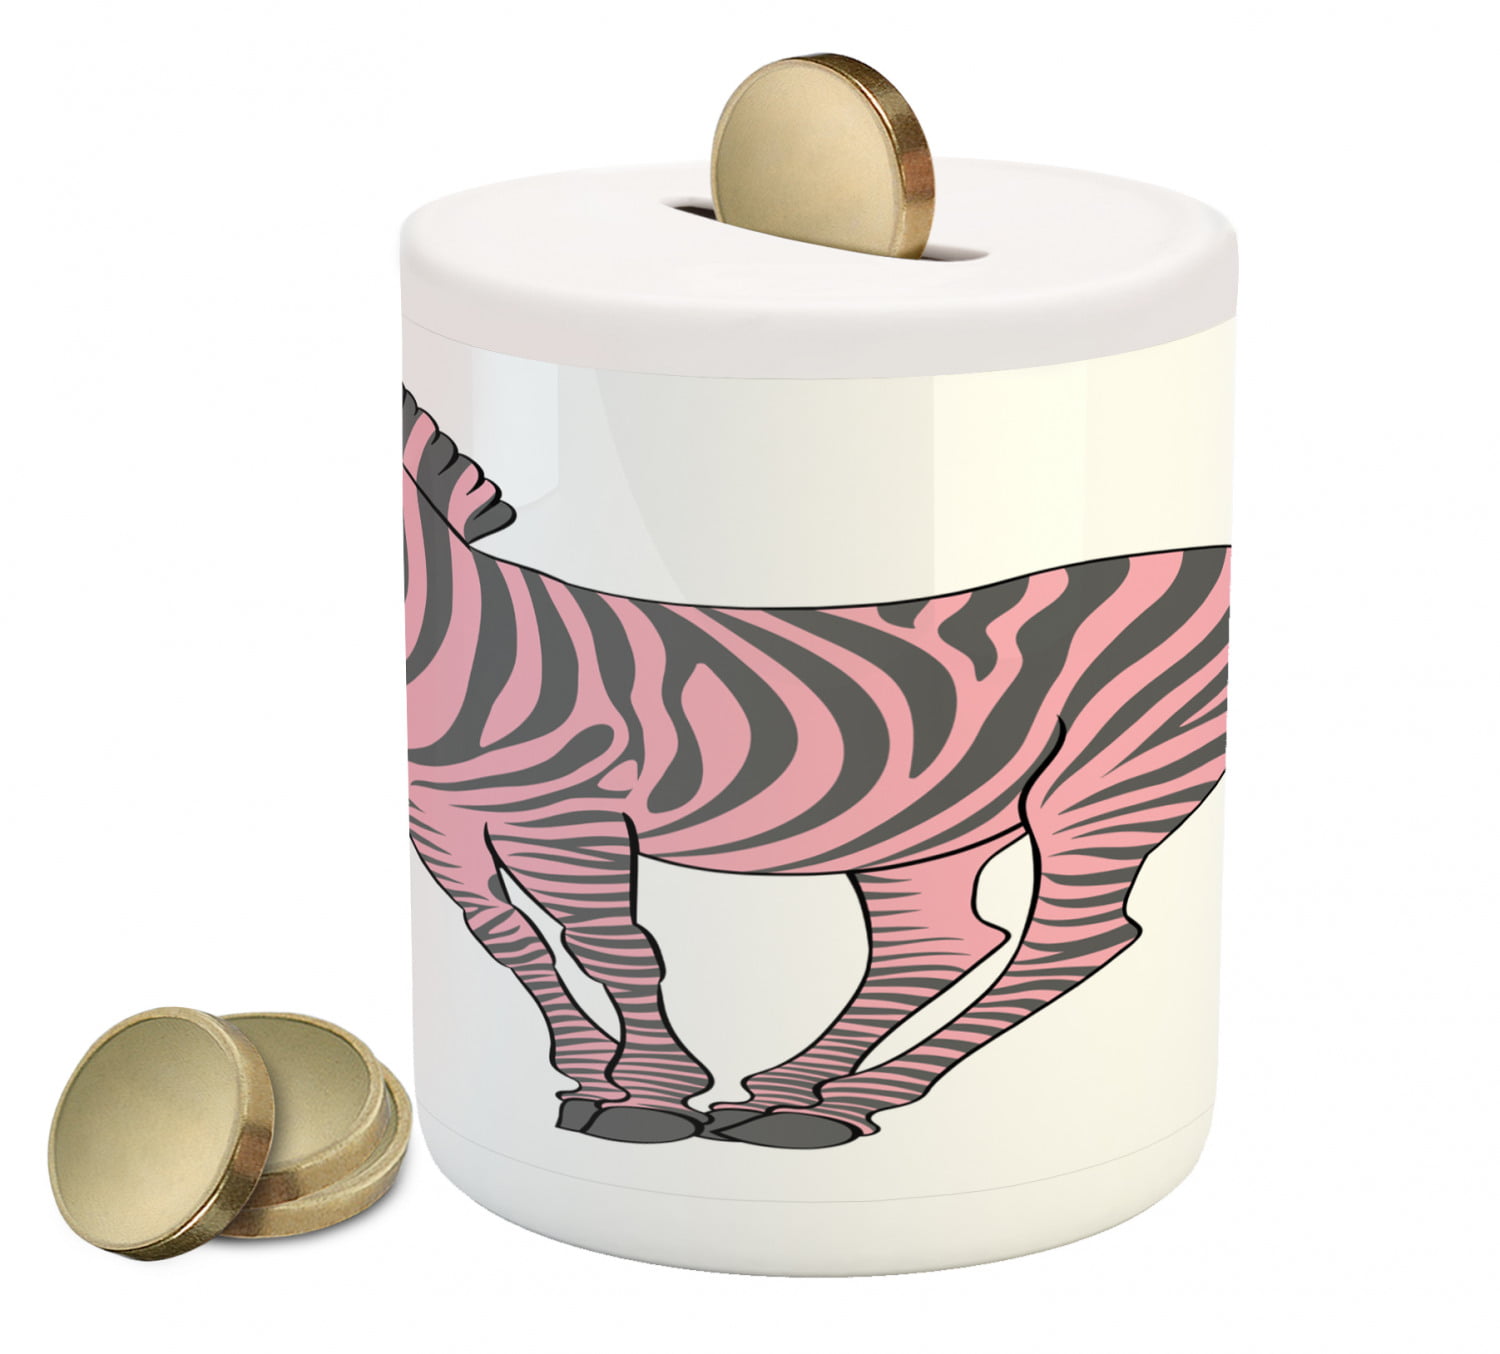 15" Handmade Wooden Zebra Coin Piggy Bank Safe Money Box Saving Gift Kids Toy 